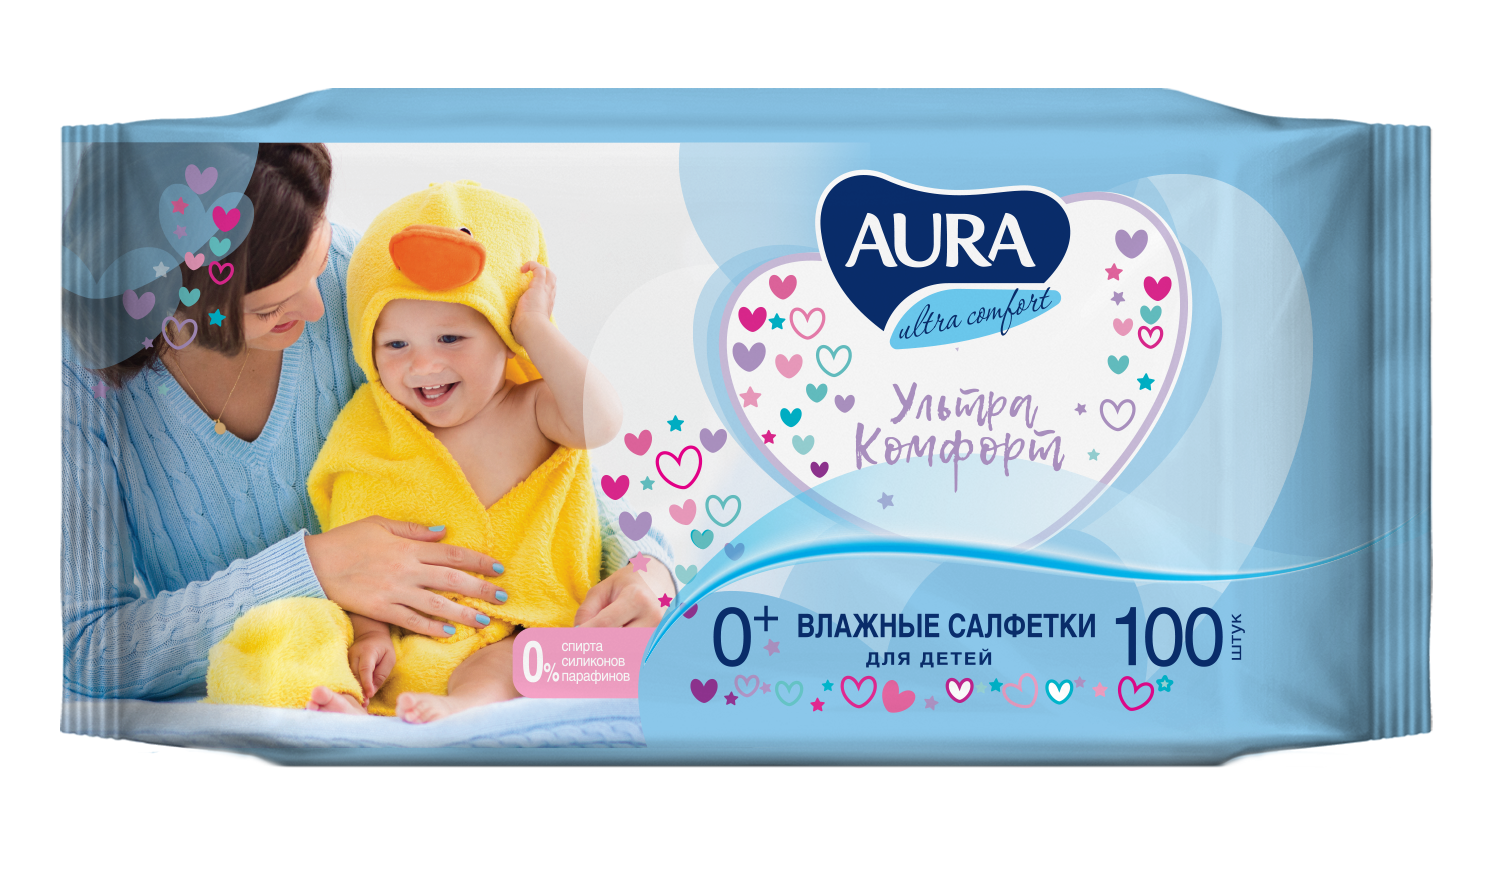 Влажные салфетки детские Aura ULTRA COMFORT 0+ big-pack с крышкой 100х6 шт детские влажные салфетки aura ultra comfort 100 шт